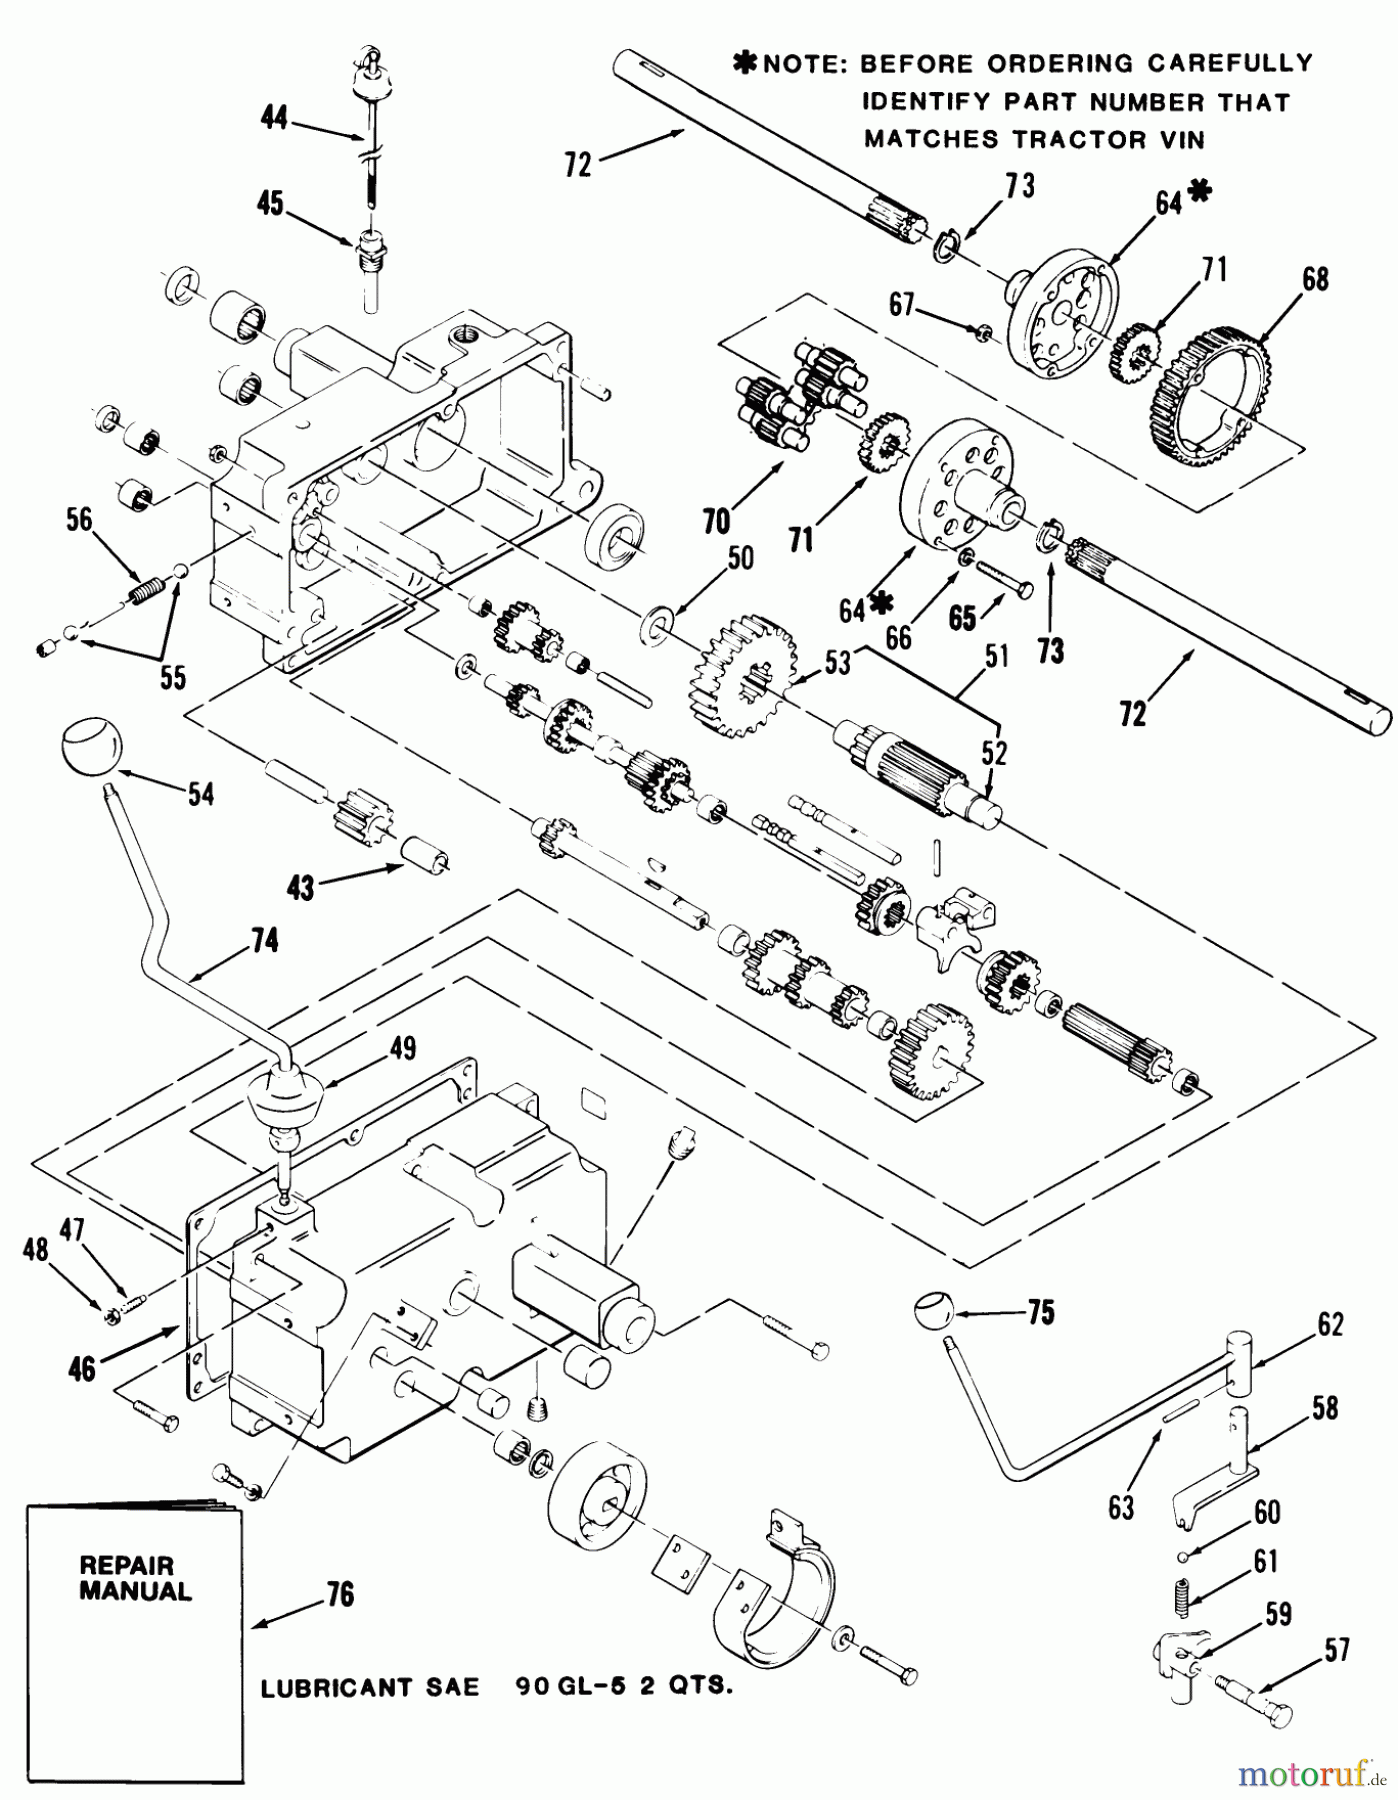  Toro Neu Mowers, Lawn & Garden Tractor Seite 1 31-17K802 (417-8) - Toro 417-8 Garden Tractor, 1986 MECHANICAL TRANSMISSION-8-SPEED #2